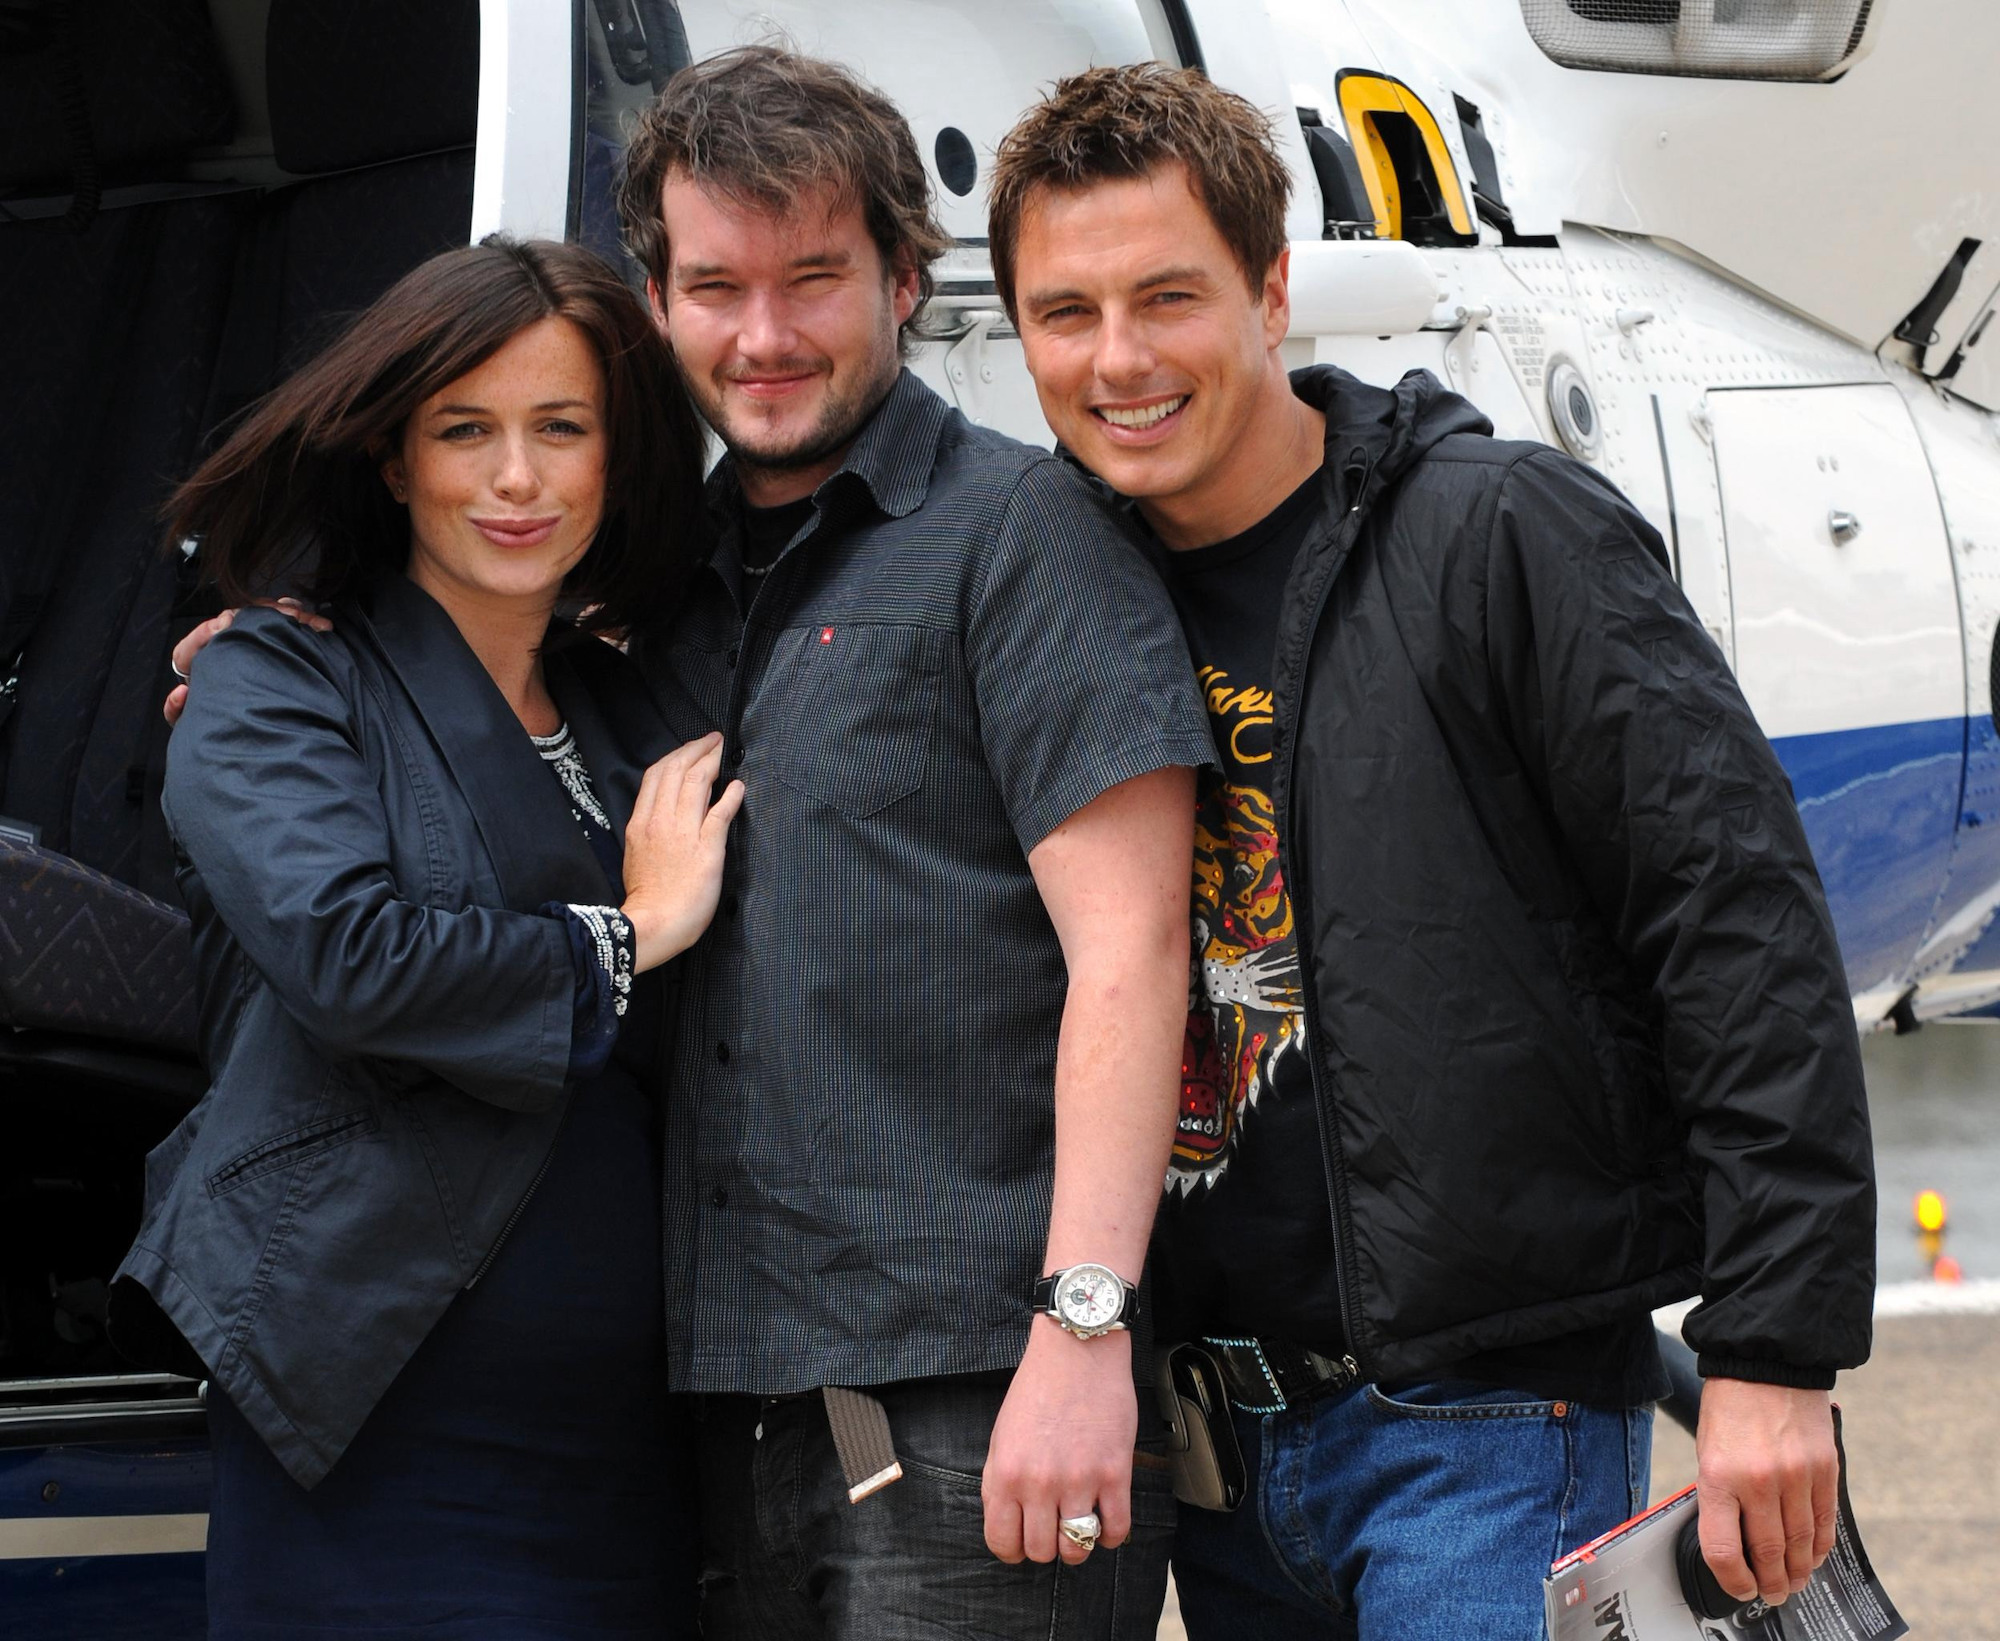 Eve Myles, Gareth David-Lloyd, and John Barrowman of 'Torchwood' in July 2009